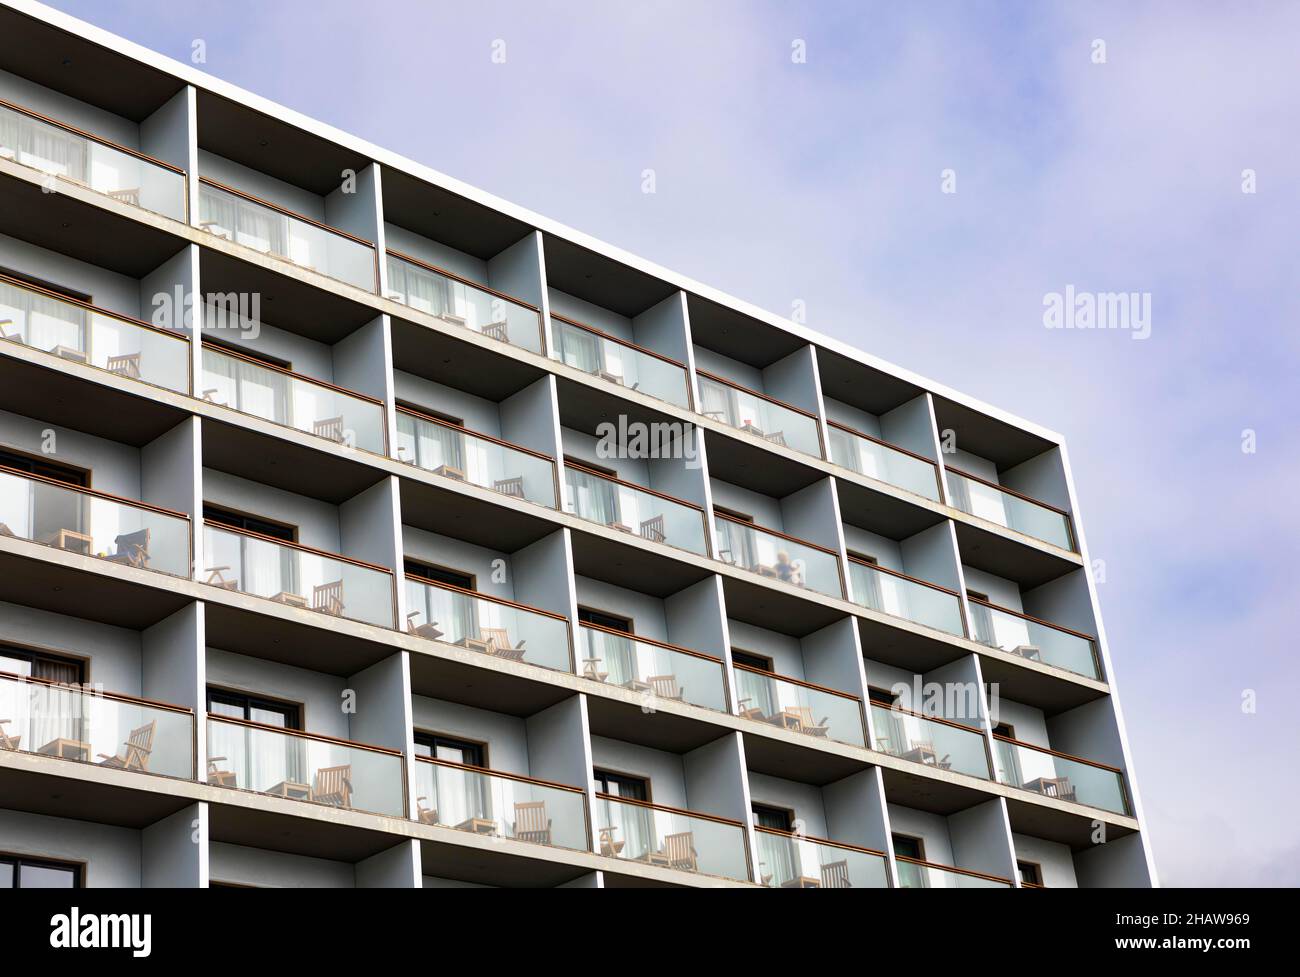 Modern high-rise facade with balconies, Punta Delgada, Sao Miguel Island, Azores, Portugal Stock Photo